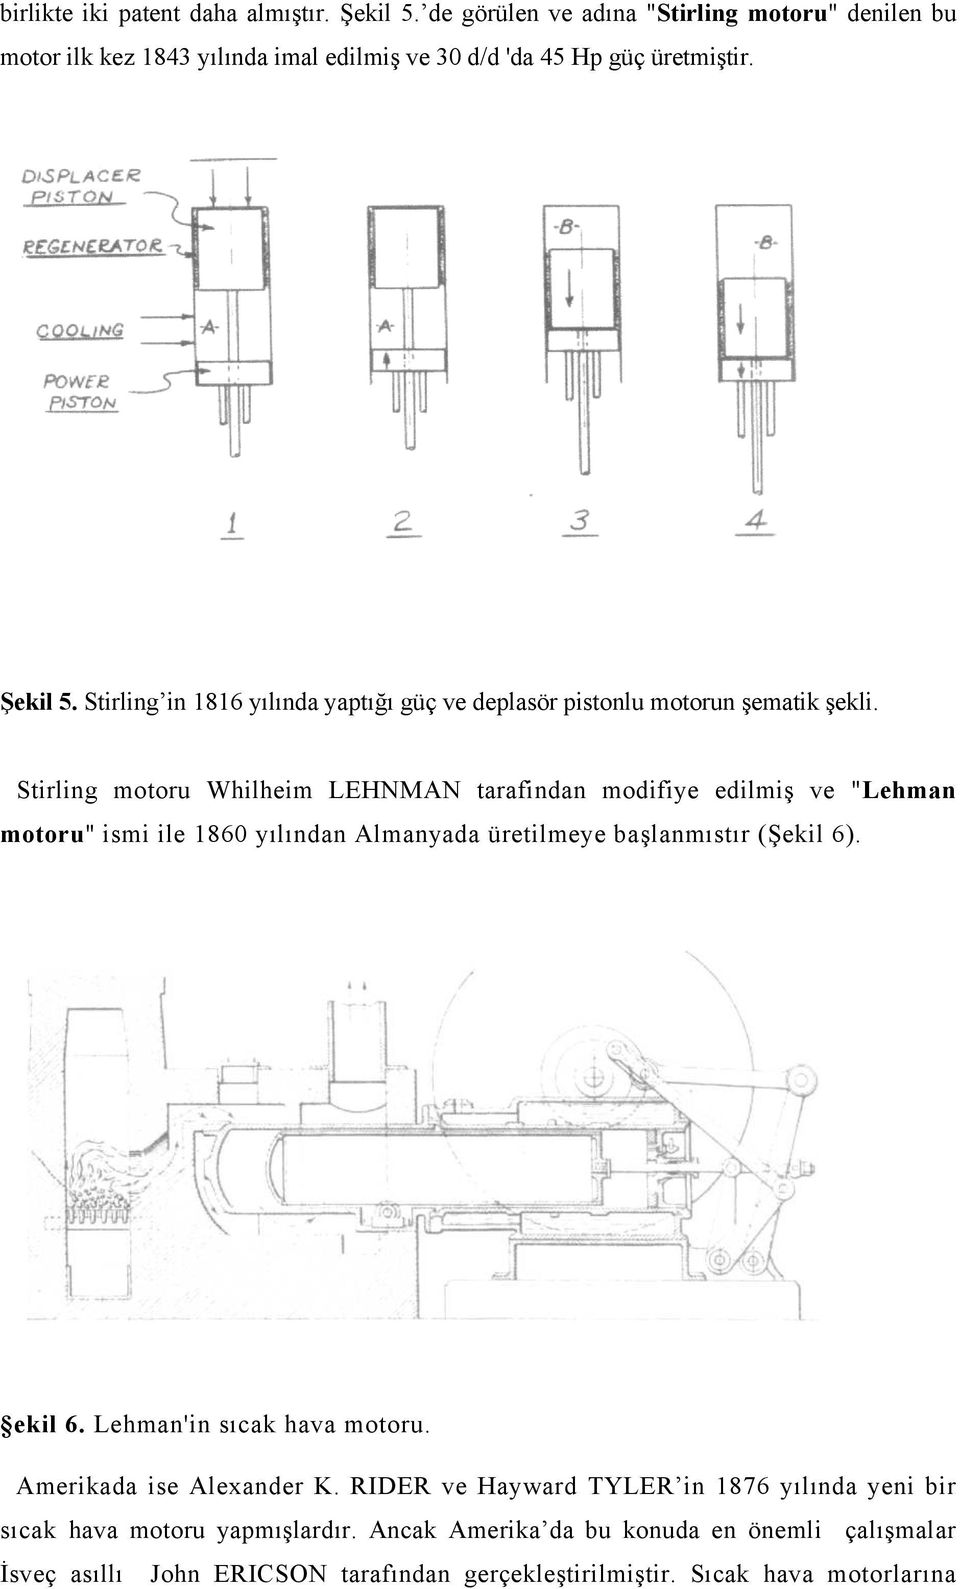 Stirling motoru Whilheim LEHNMAN tarafindan modifiye edilmiş ve "Lehman motoru" ismi ile 860 yılından Almanyada üretilmeye başlanmıstır (Şekil 6). ekil 6.